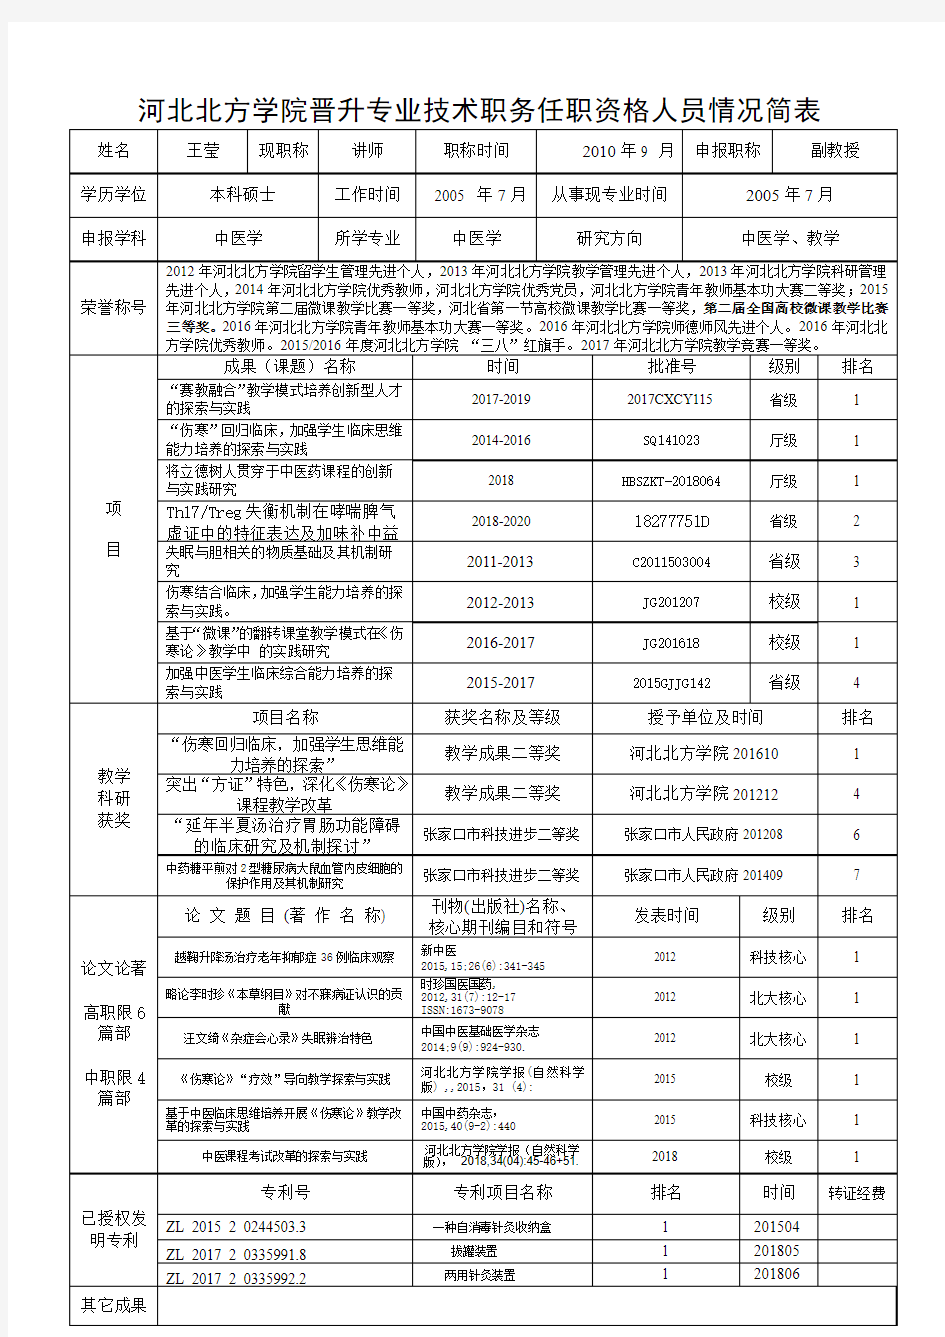 河北北方学院晋升专业技术职务任职资格人员情况简表